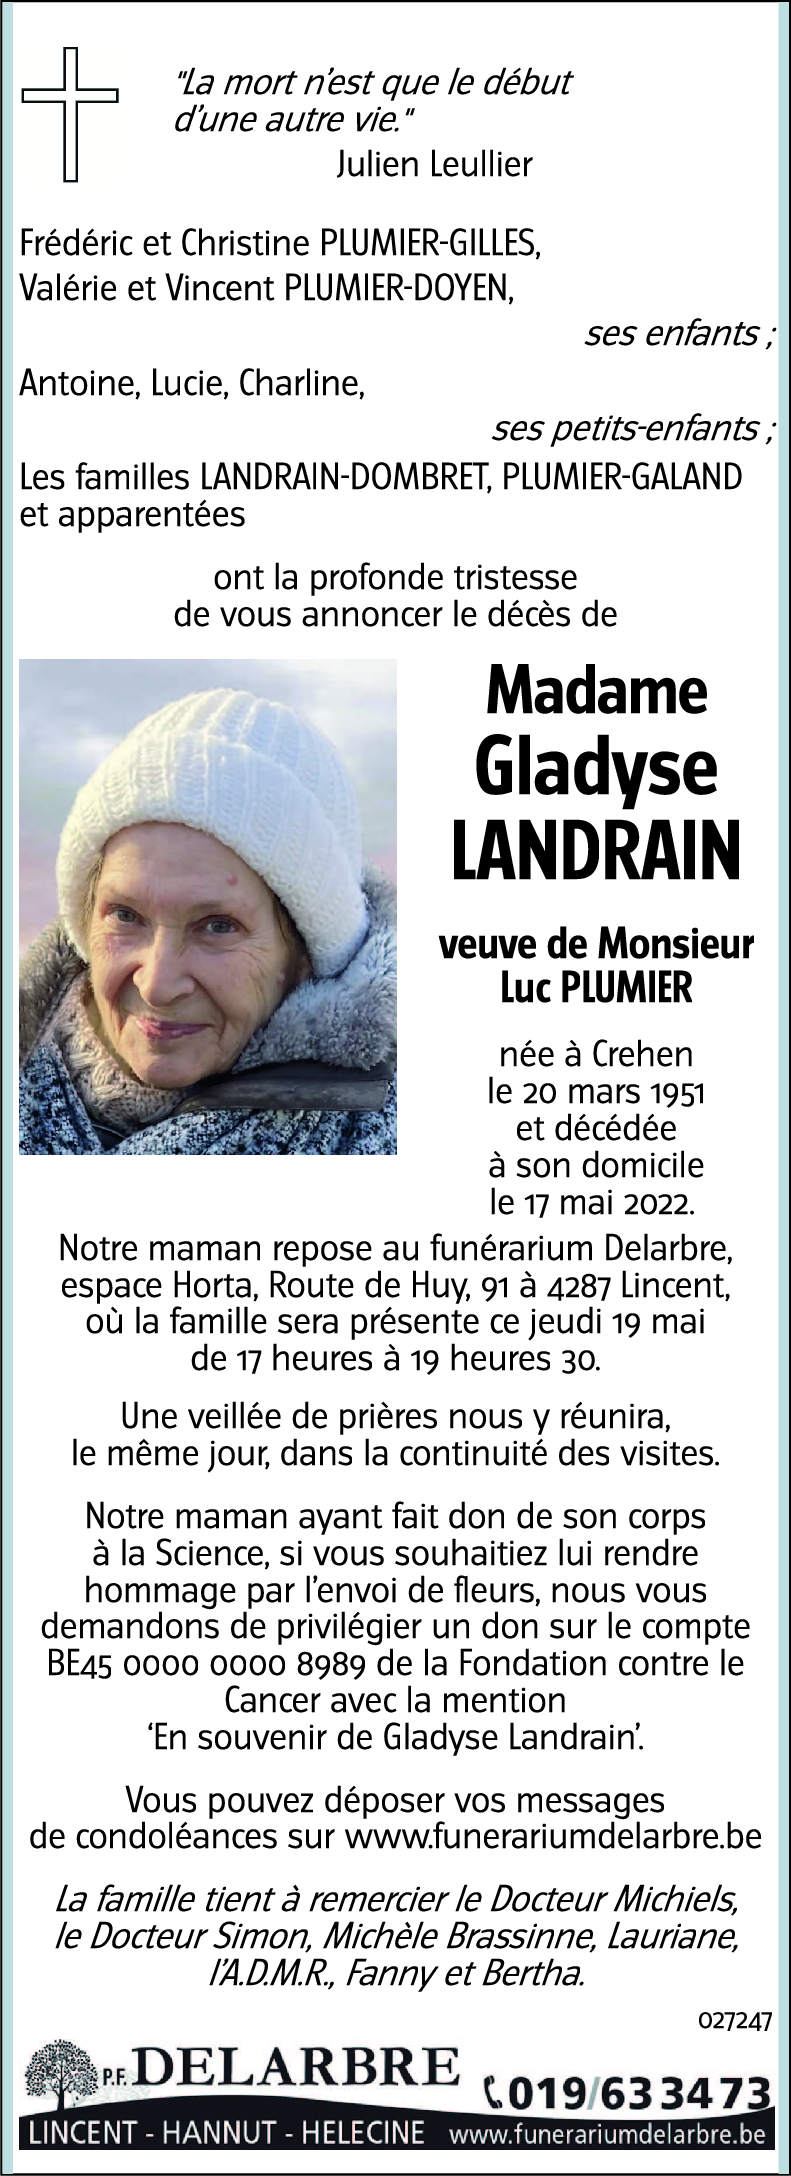 Gladyse LANDRAIN